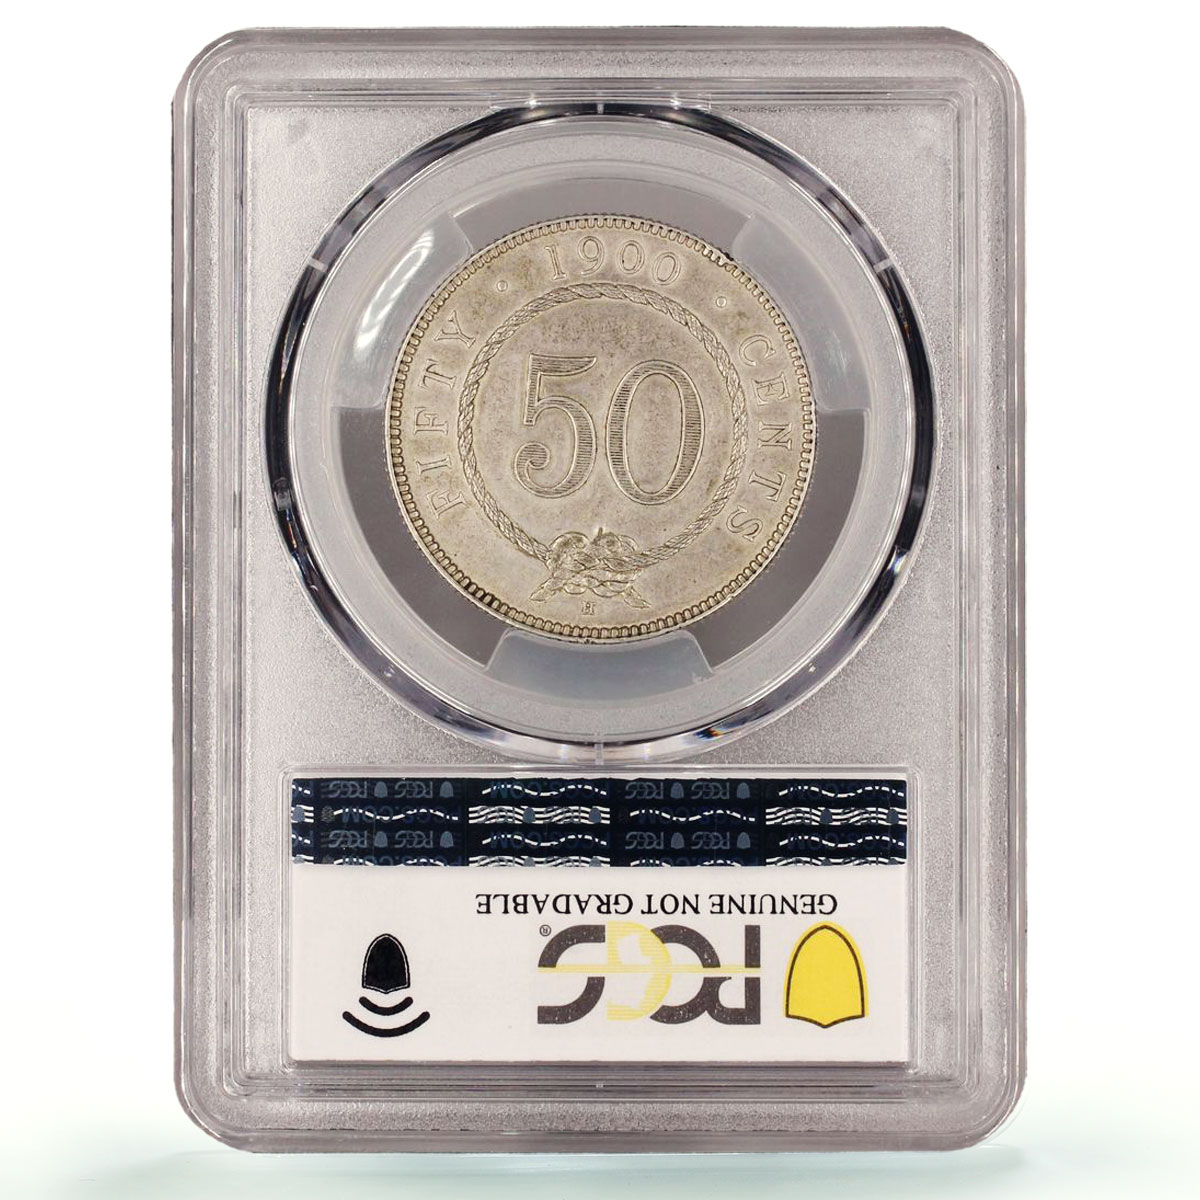 Malaysia Sarawak 50 cents Regular Coinage Rajah Brooke AU PCGS silver coin 1900